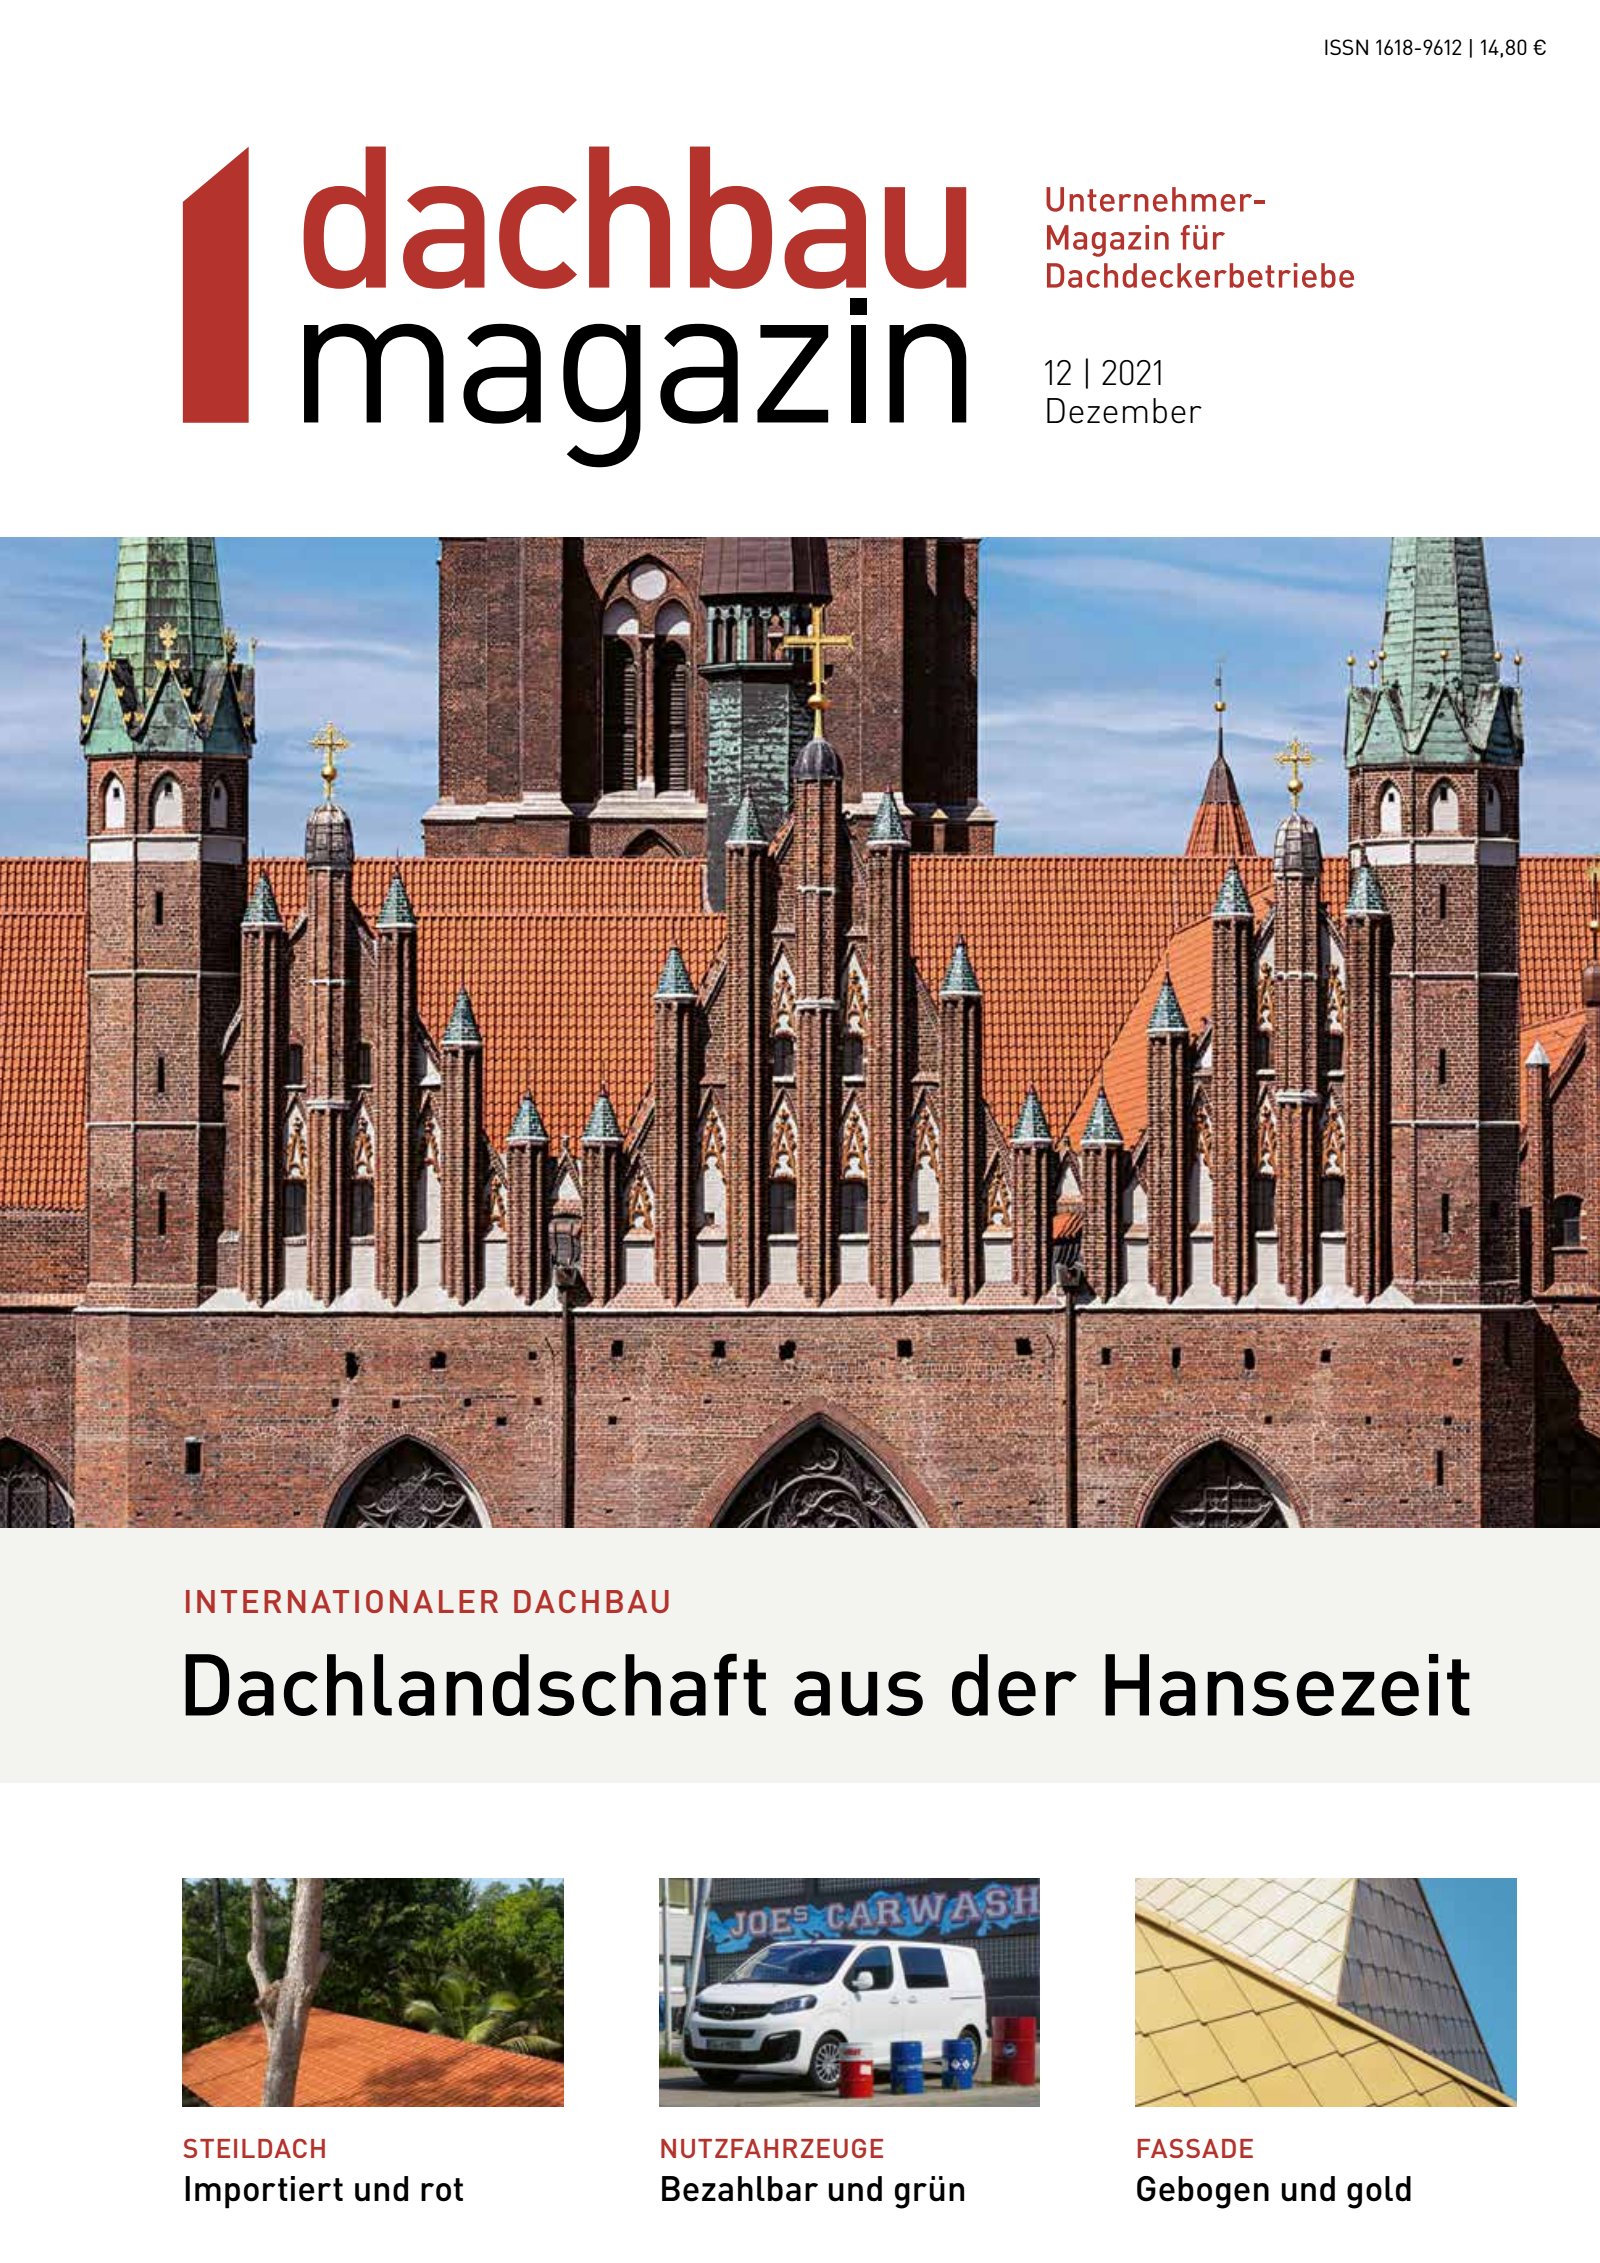 dachbau magazin 12/2021 Digital